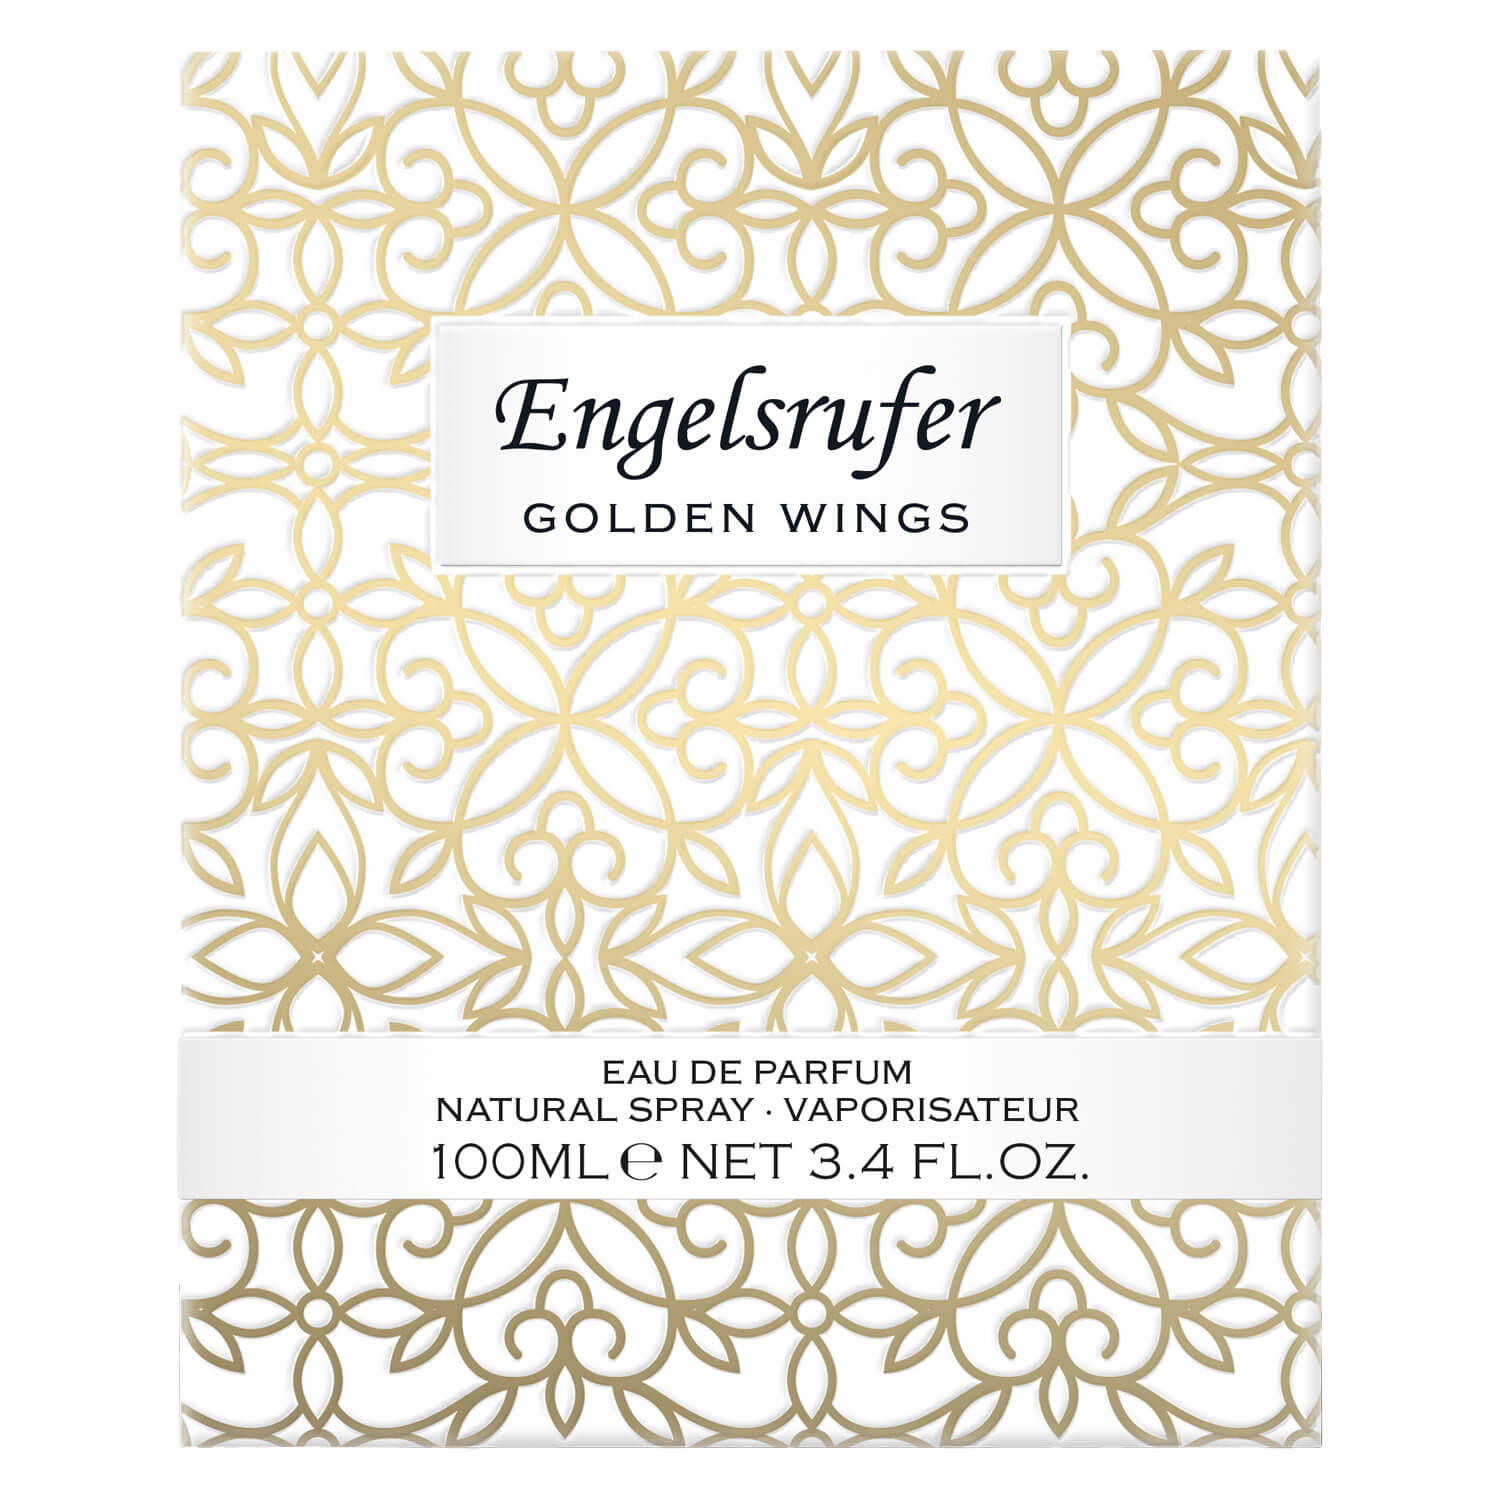 Engelsrufer - Golden Wings Eau Parfum de